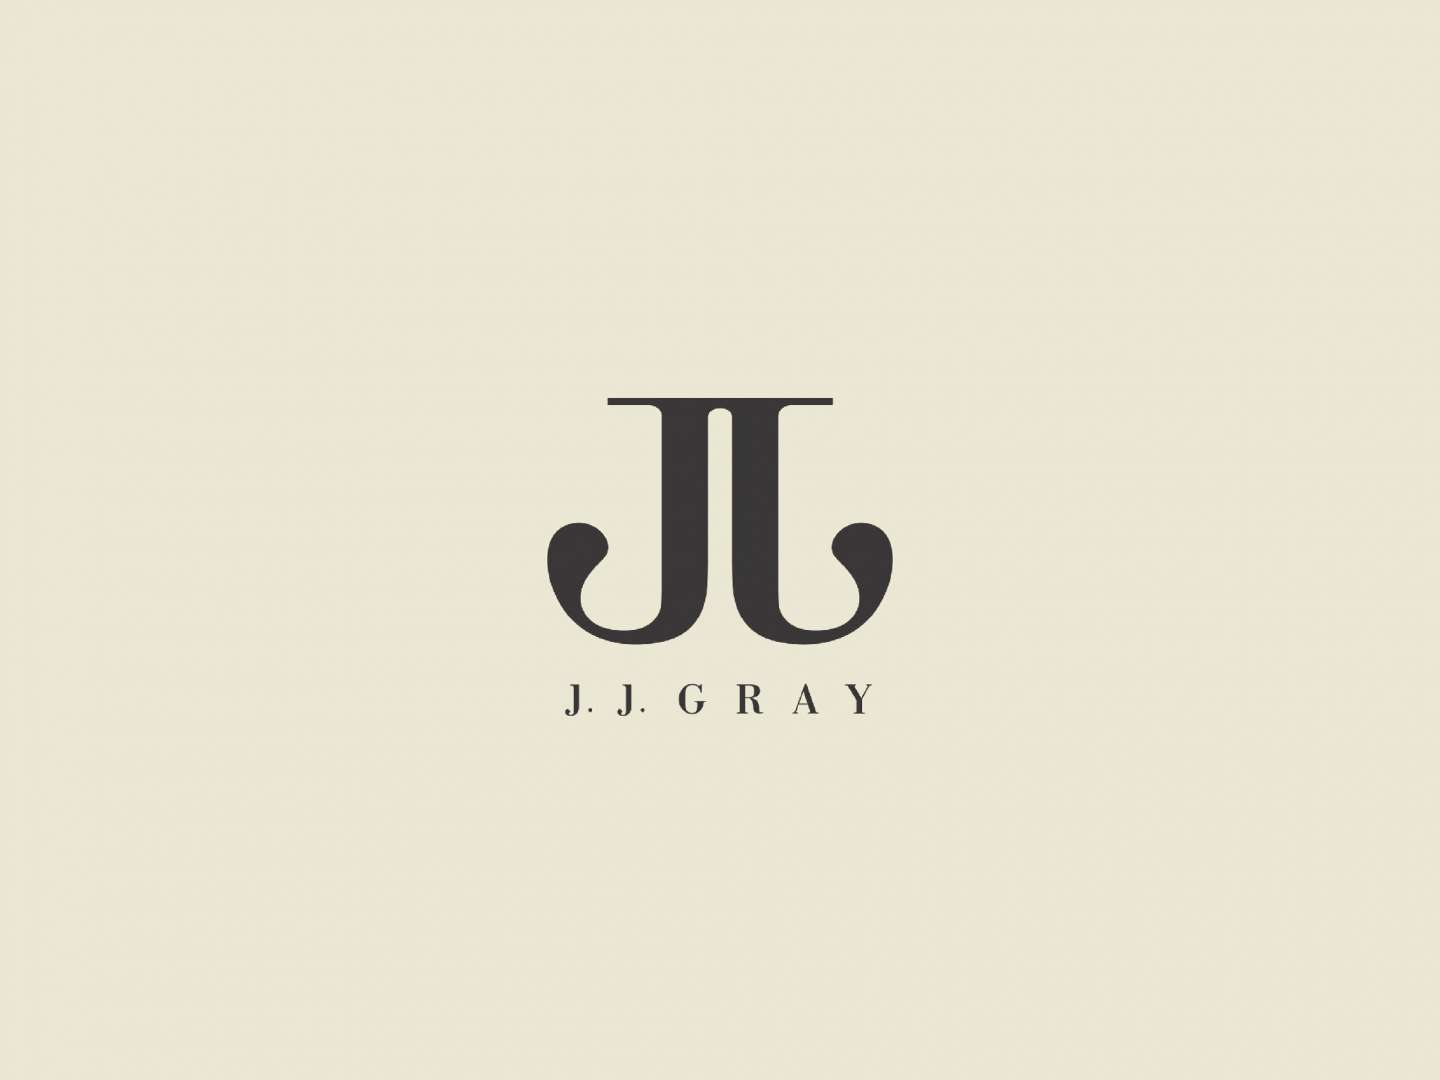 J. J. Gray